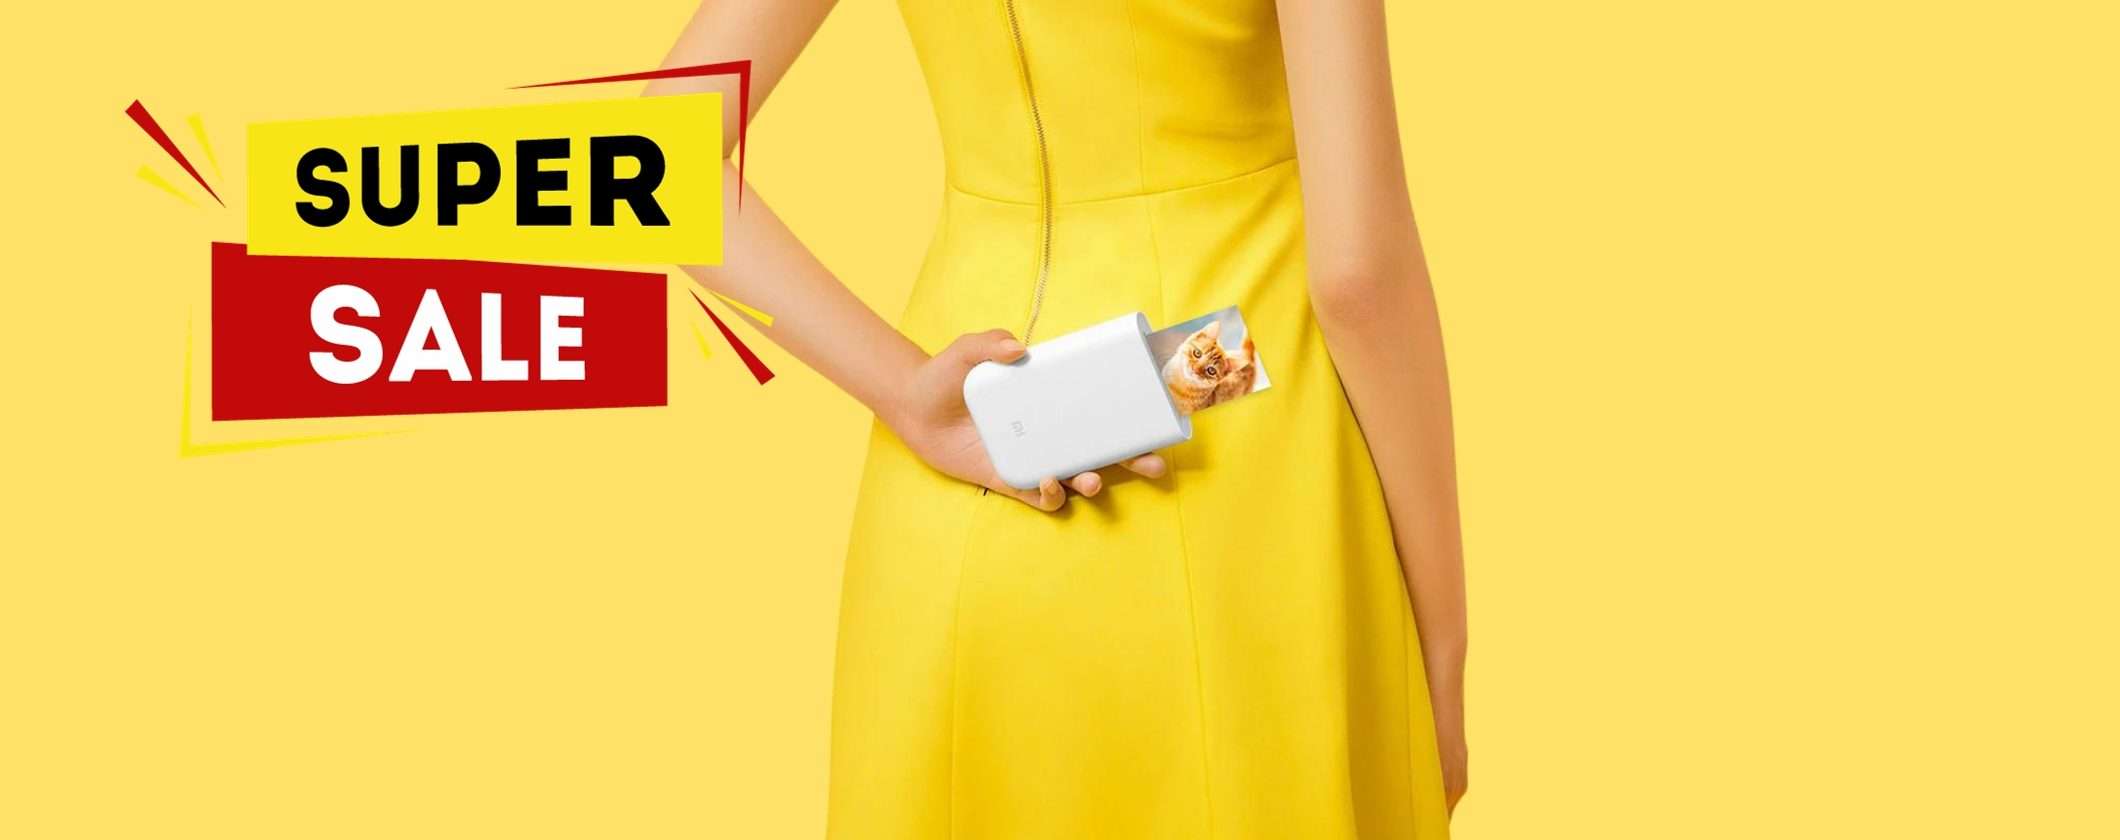 Mini Stampante Portatile Xiaomi: OGGI in OFFERTA BOMBA